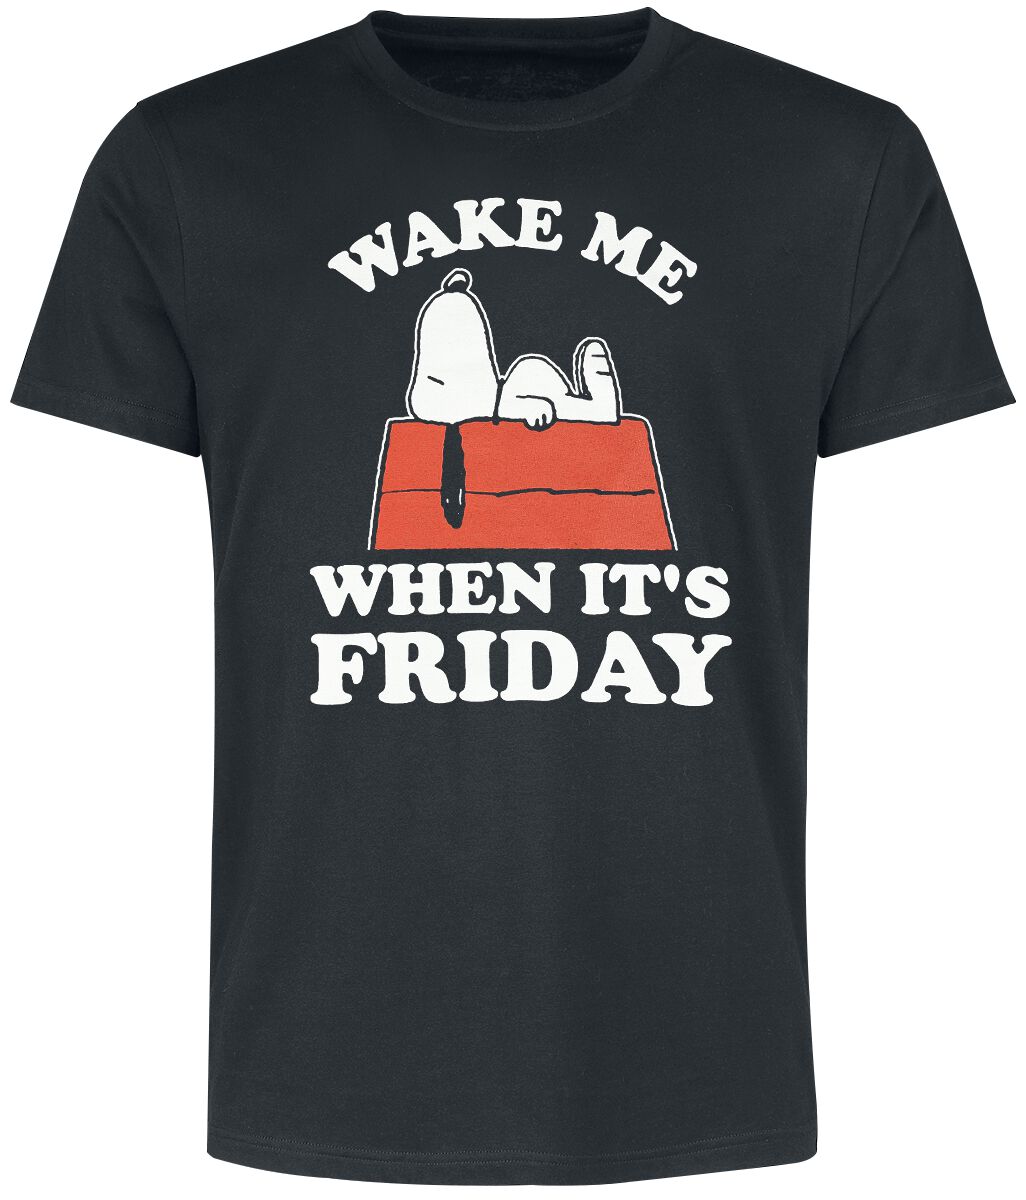 Peanuts T-Shirt - Snoopy - Wake Me When It´s Friday - M bis 3XL - für Männer - Größe XXL - schwarz  - EMP exklusives Merchandise!